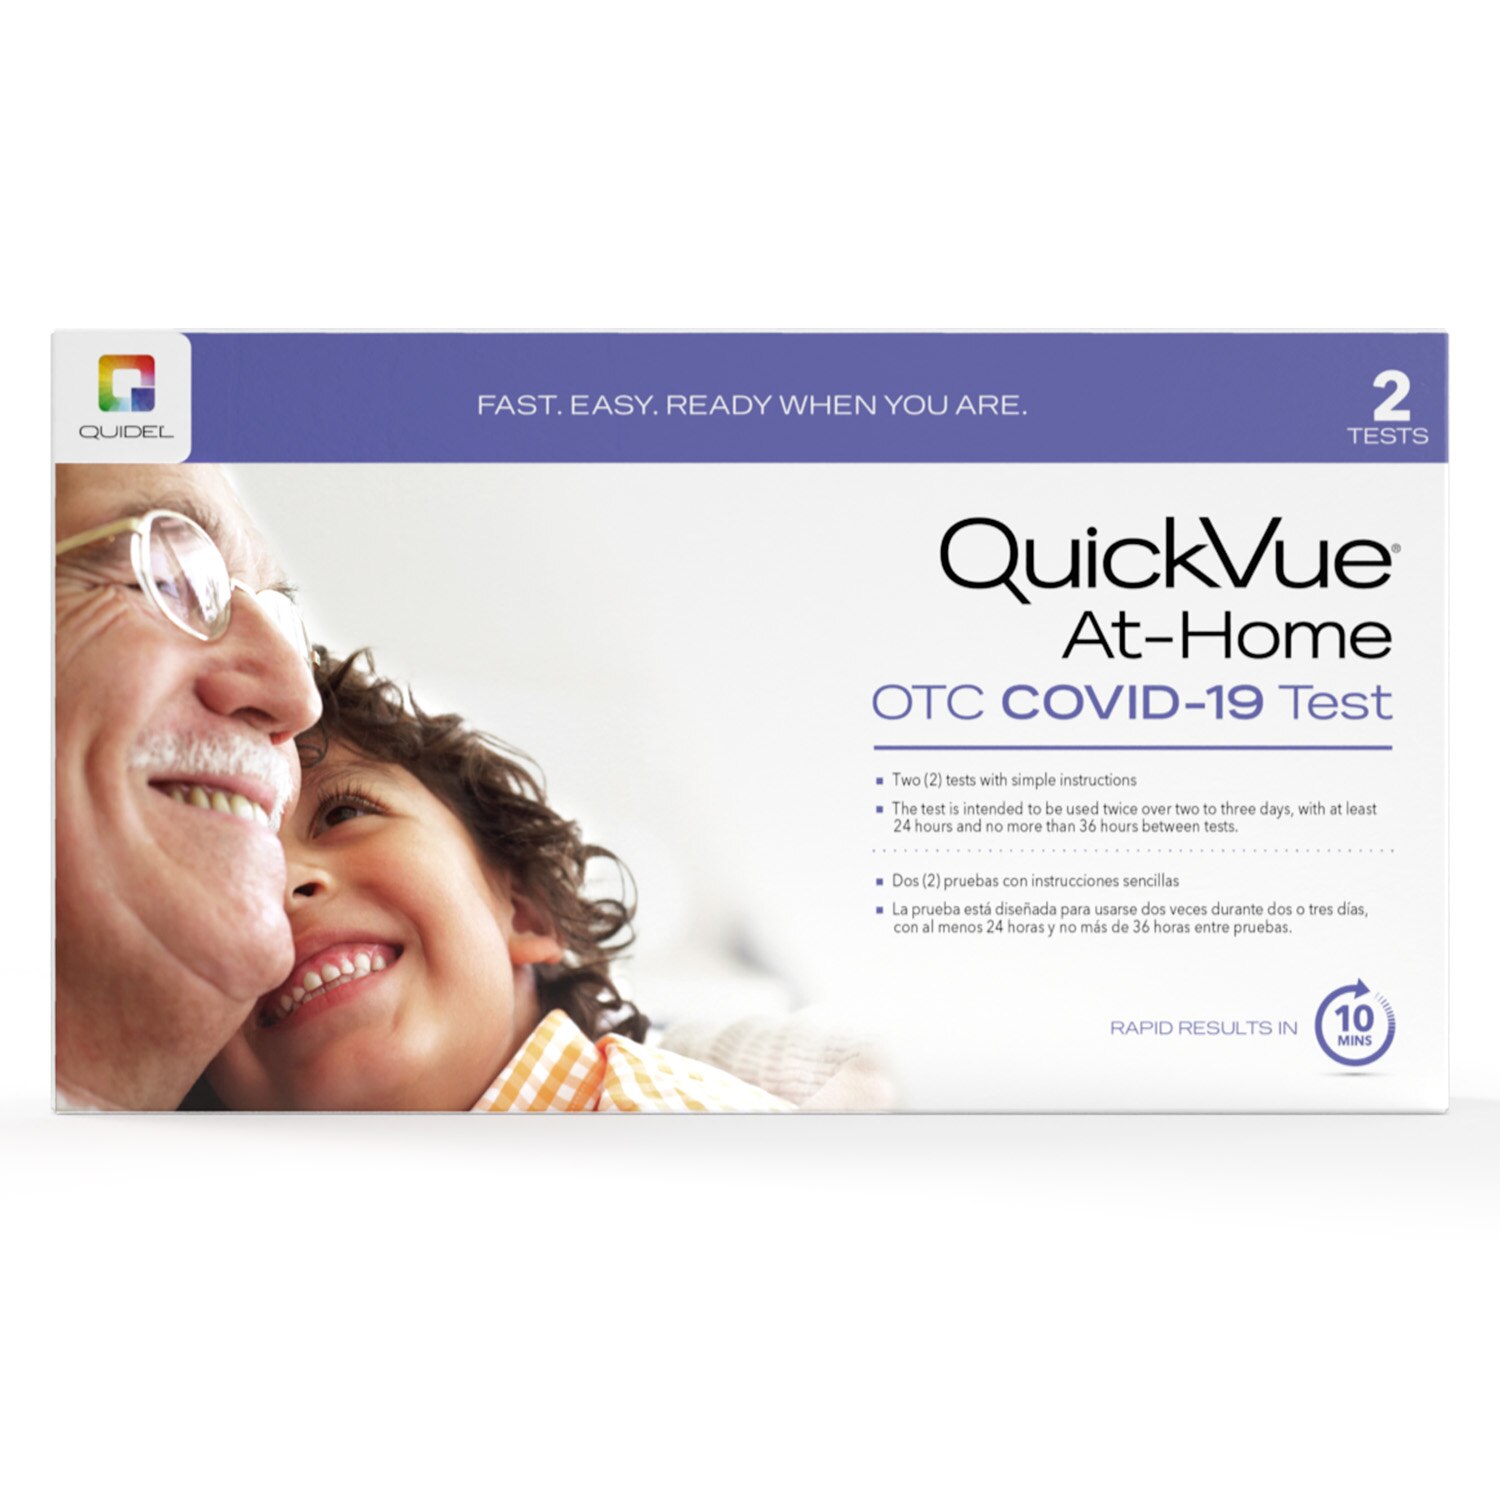 Kits de 2 pruebas en el hogar QuickVue contra el COVID-19 sin receta médica